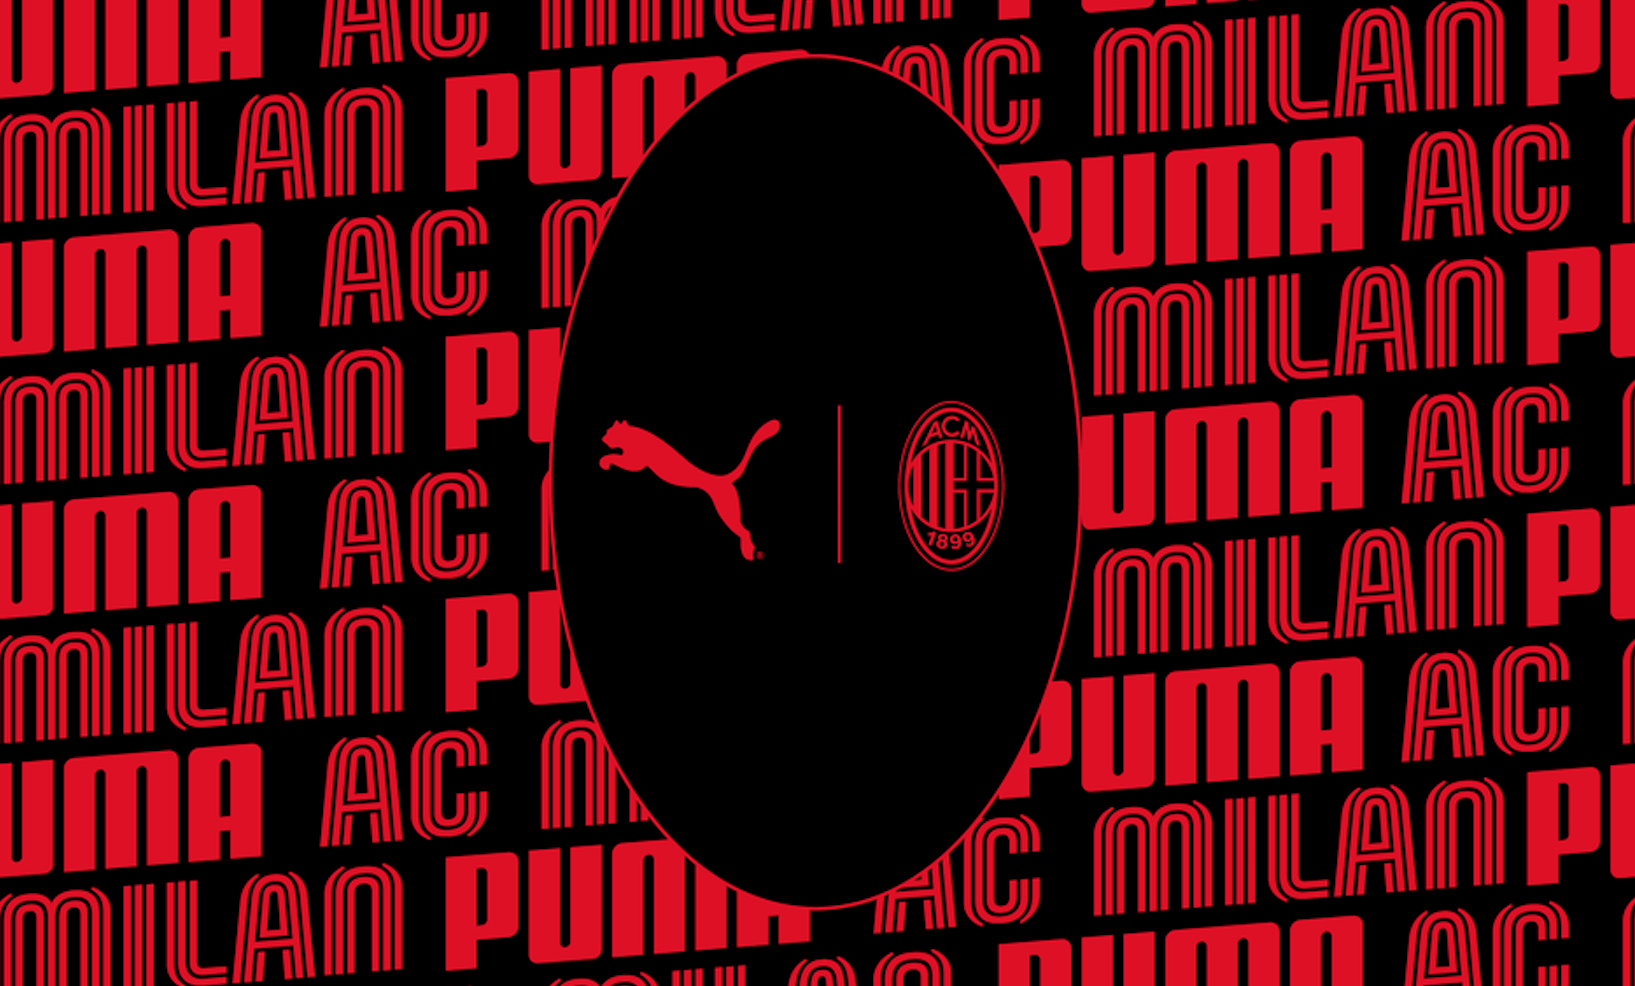 Puma eleva apuesta y renueva contrato para equipar al campeón italiano AC Milan